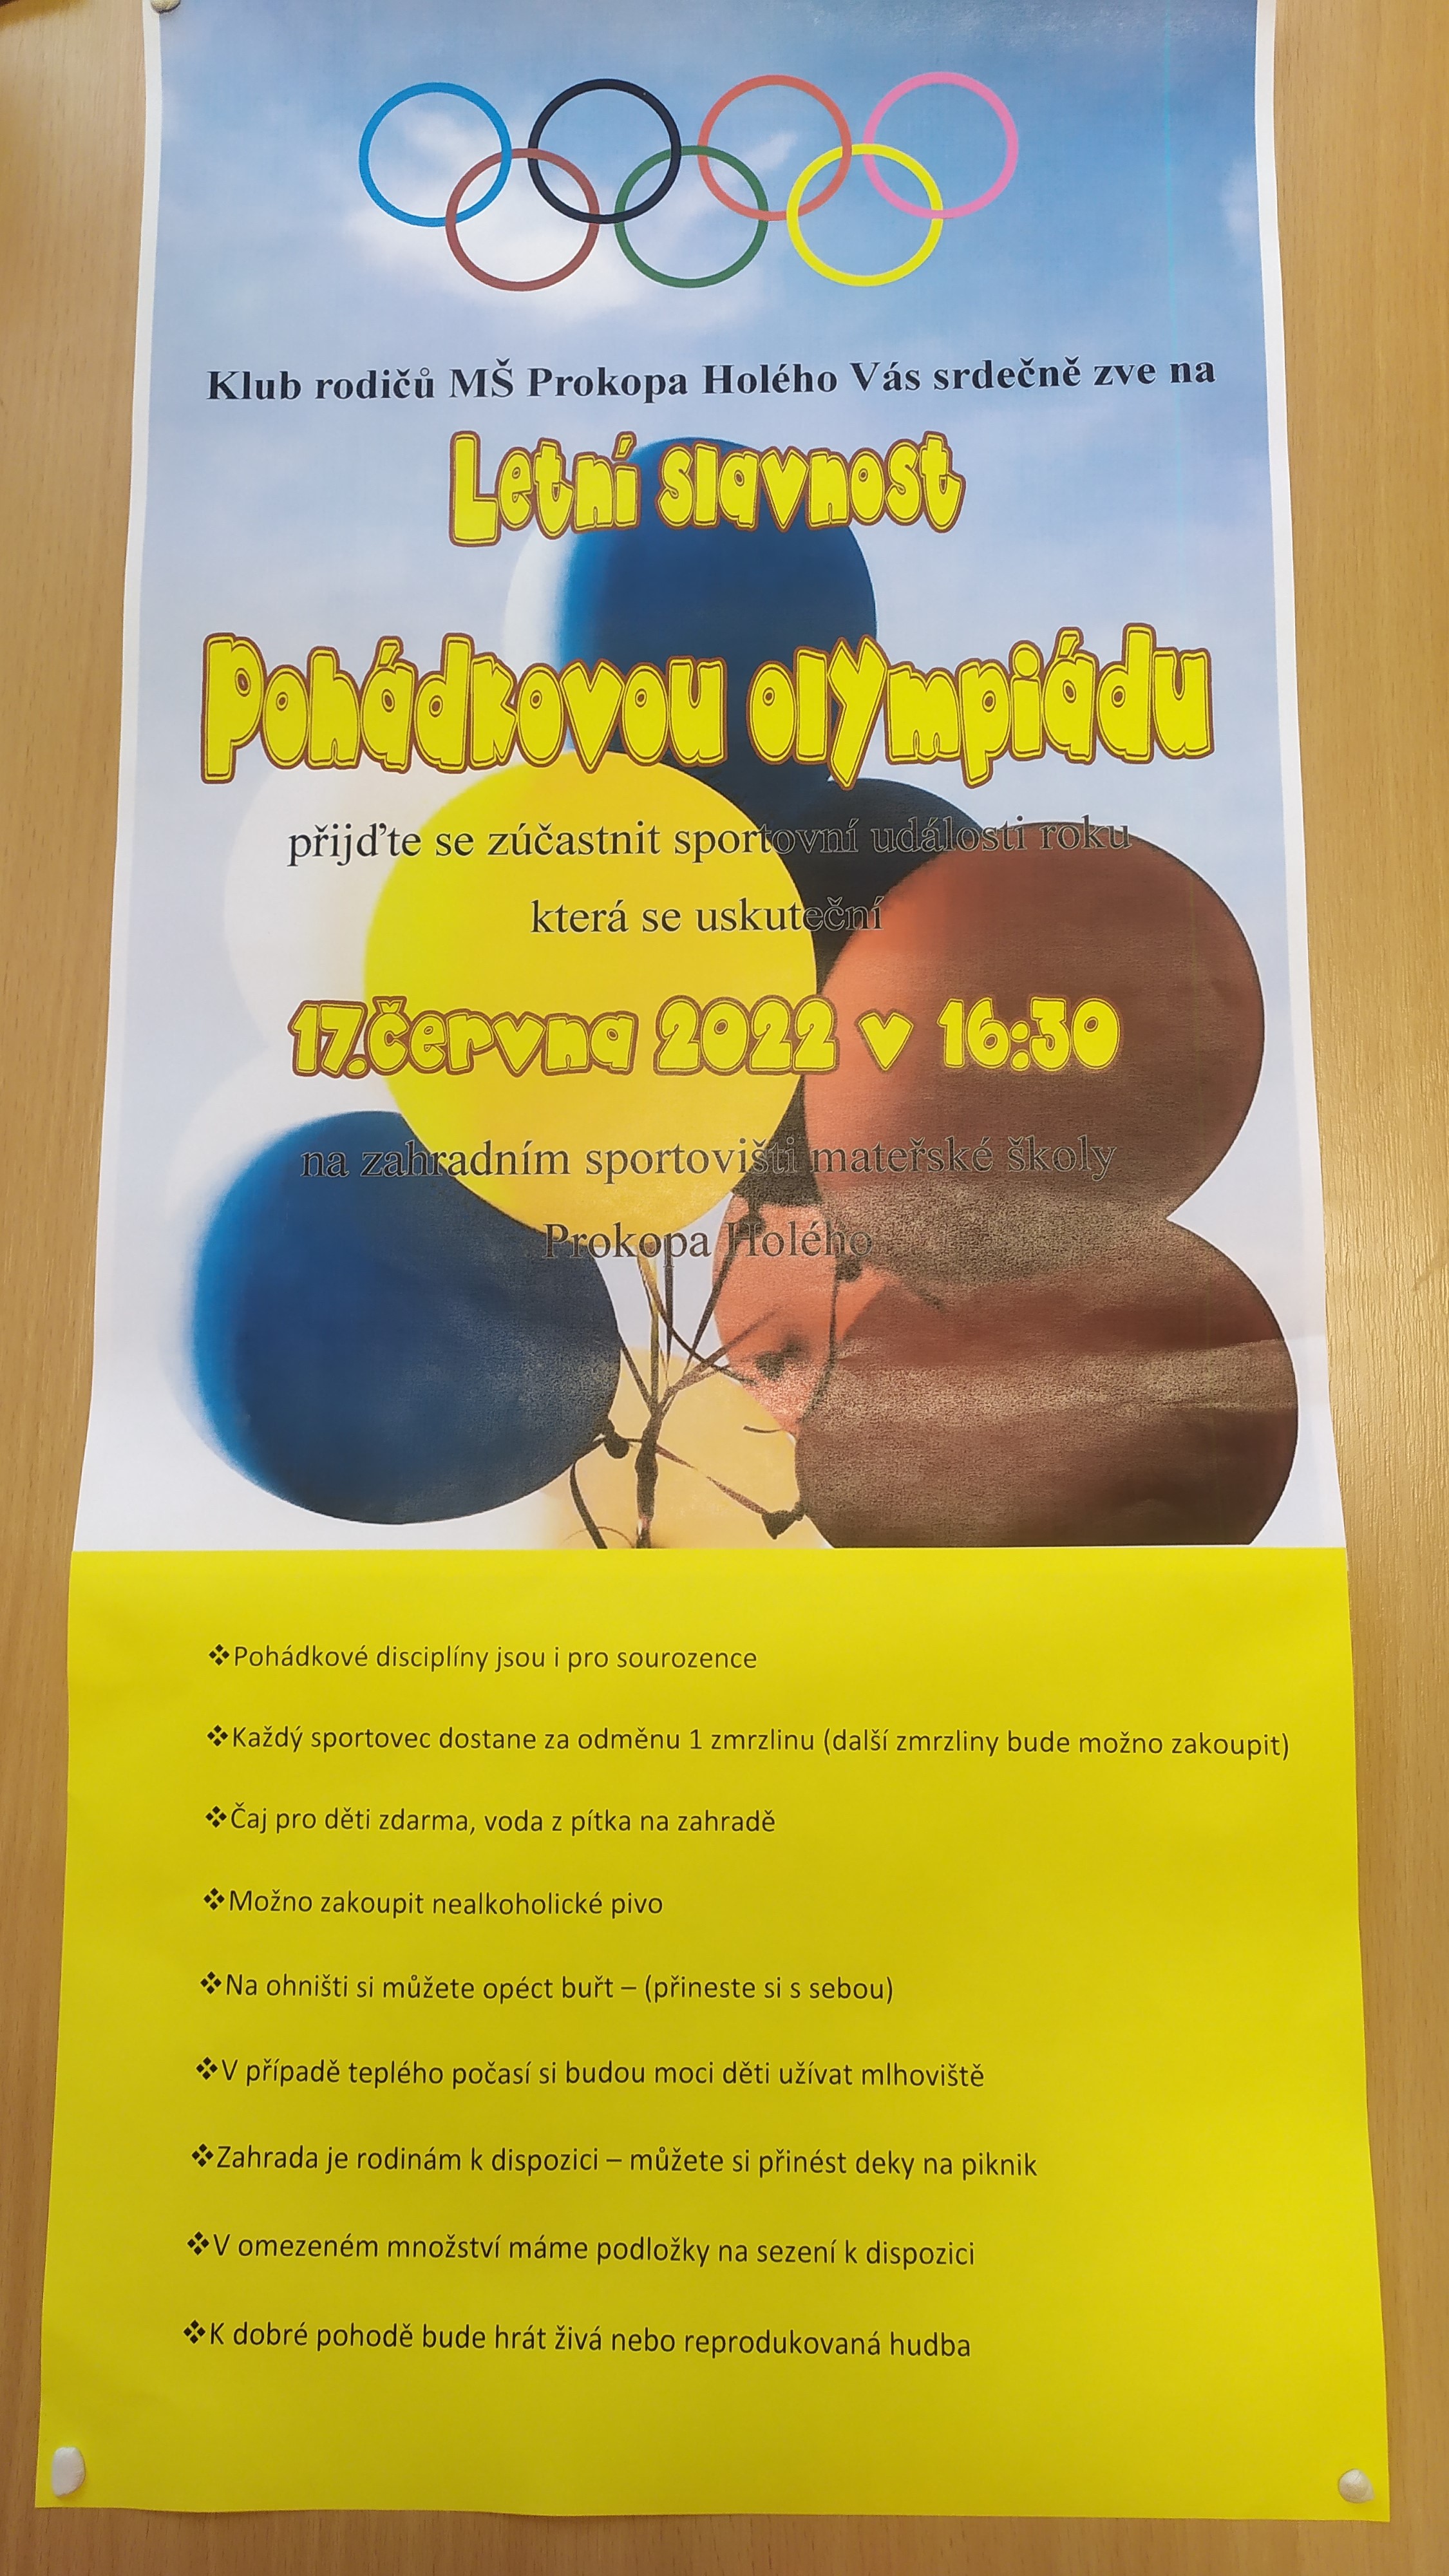 LETNÍ SLAVNOST "POHÁDKOVÁ OLYMPIÁDA" 17.6.2022 OD 16.30